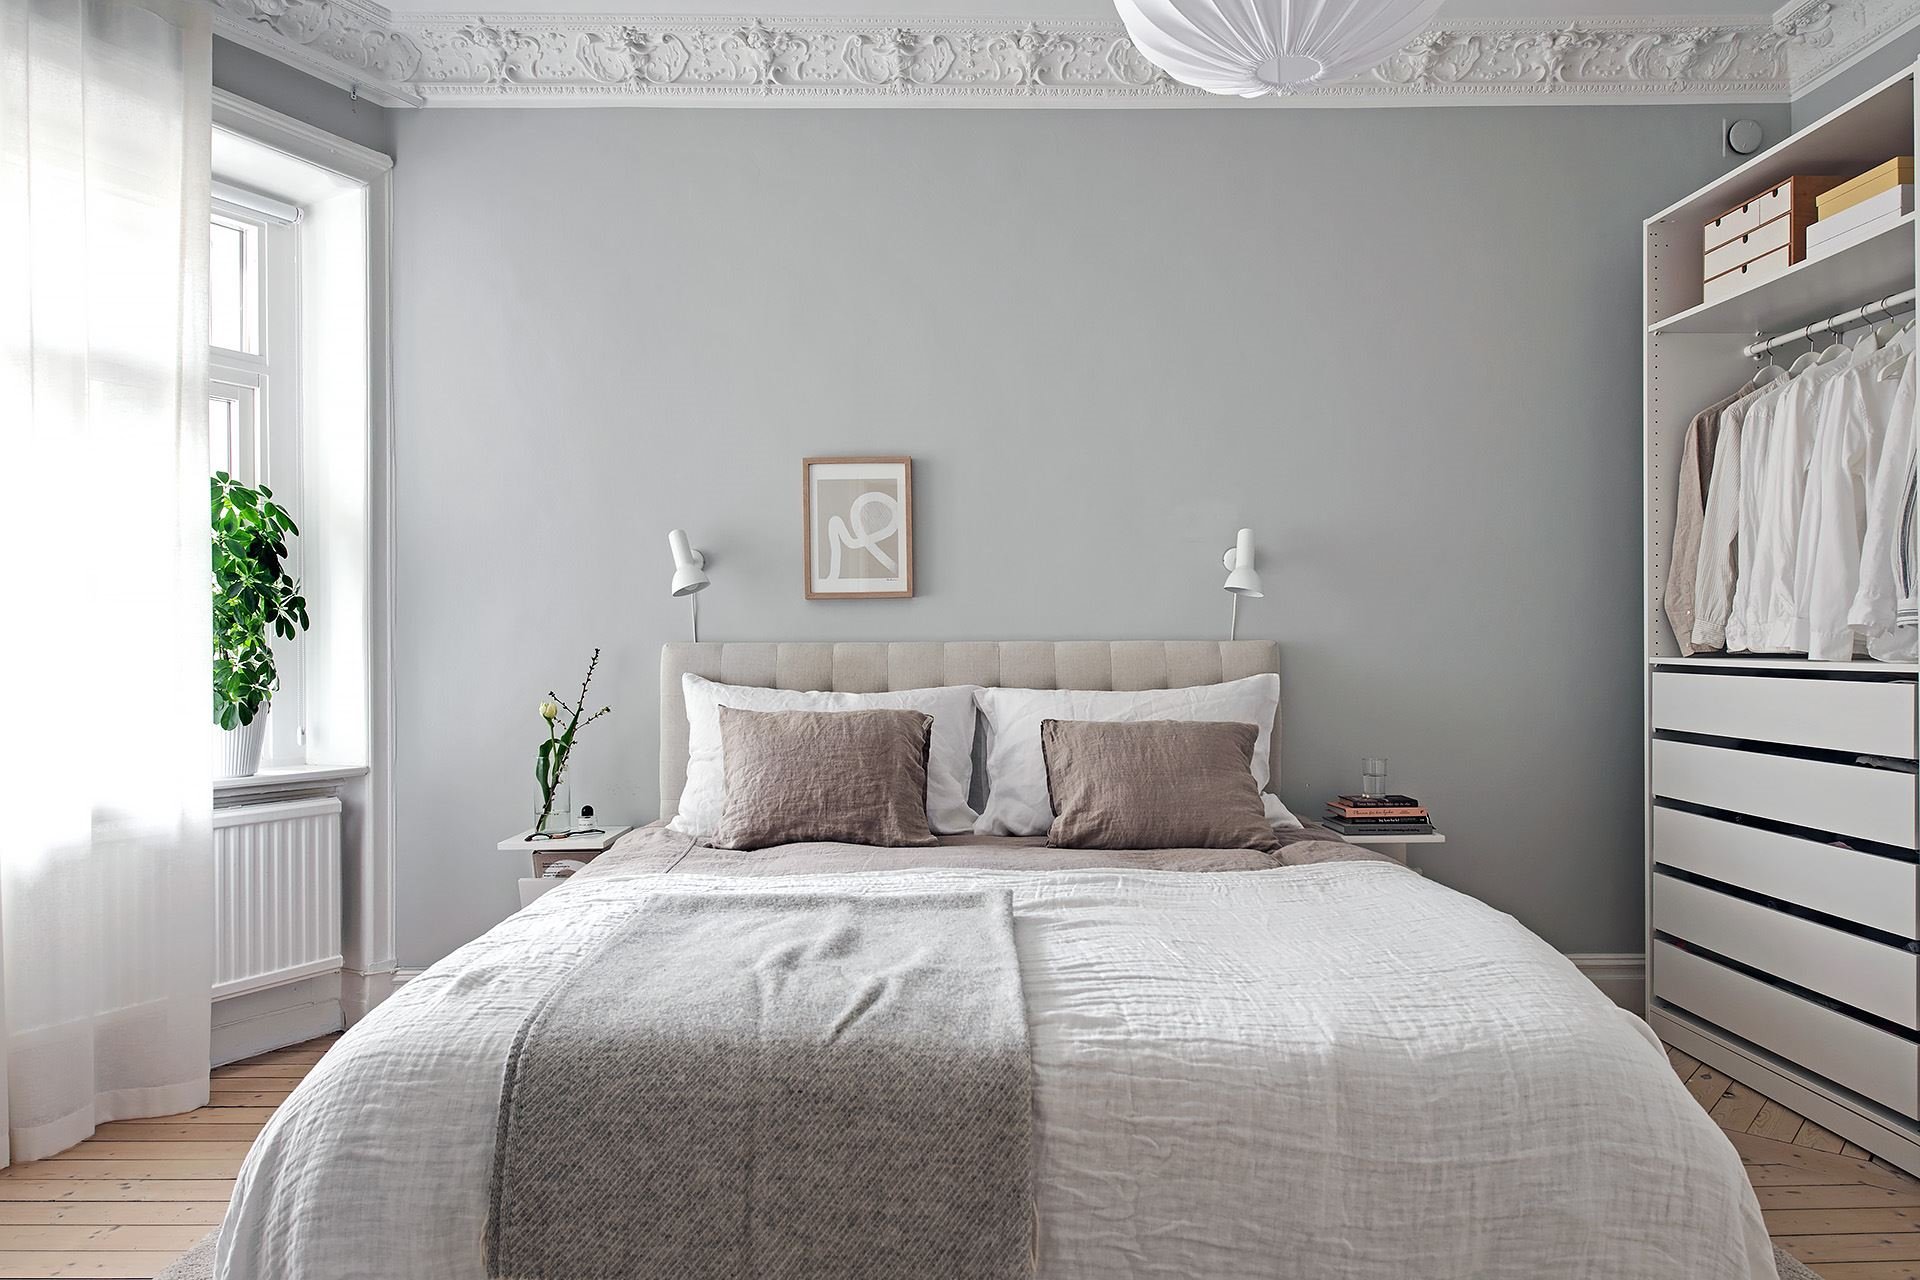 Piso con decoracion nordica y paredes en color gris con molduras dormitorio